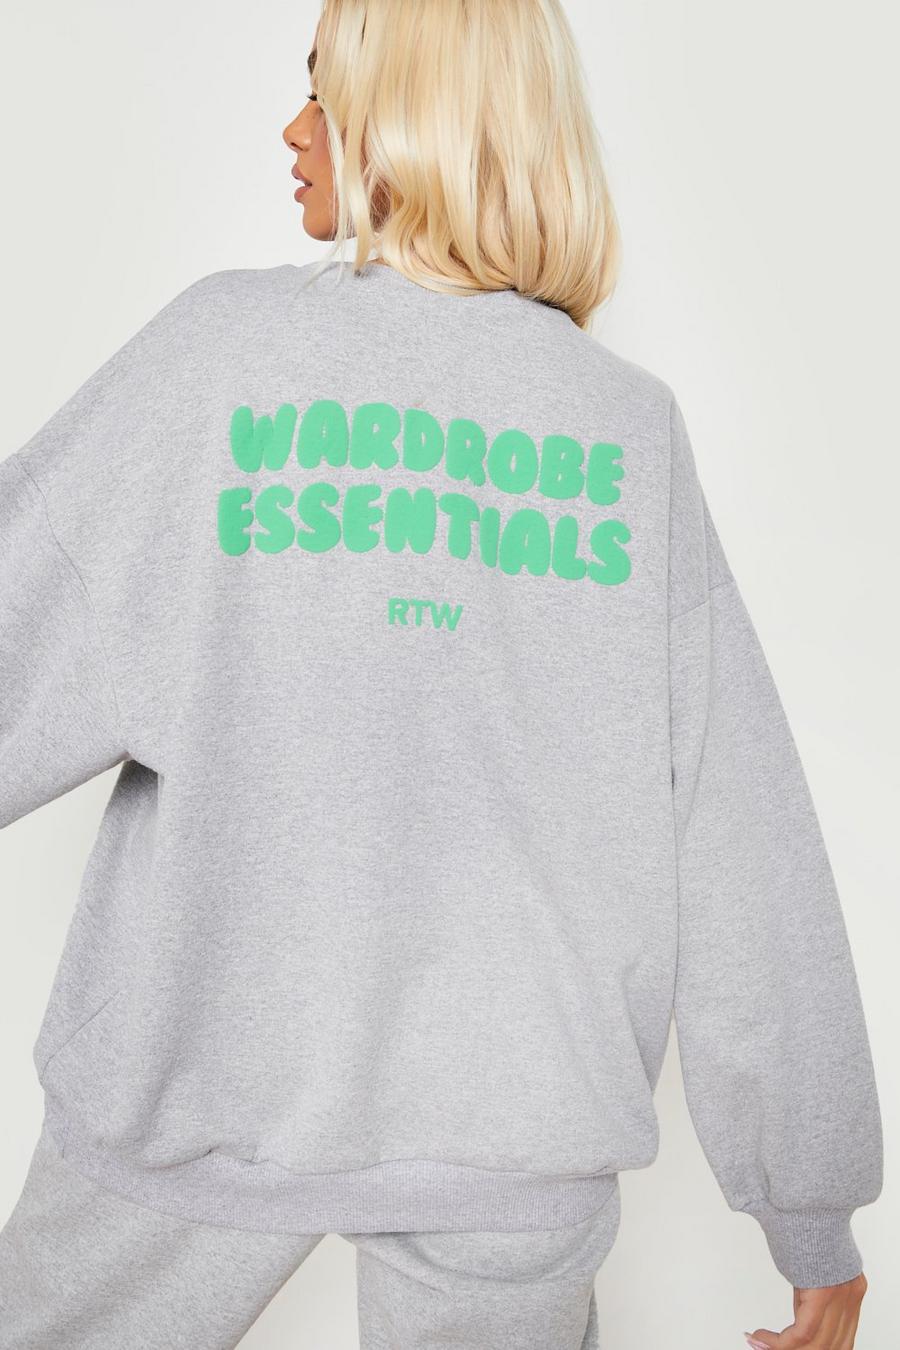 Sweatshirt mit Wardrobe Essentials Print, Ash grey